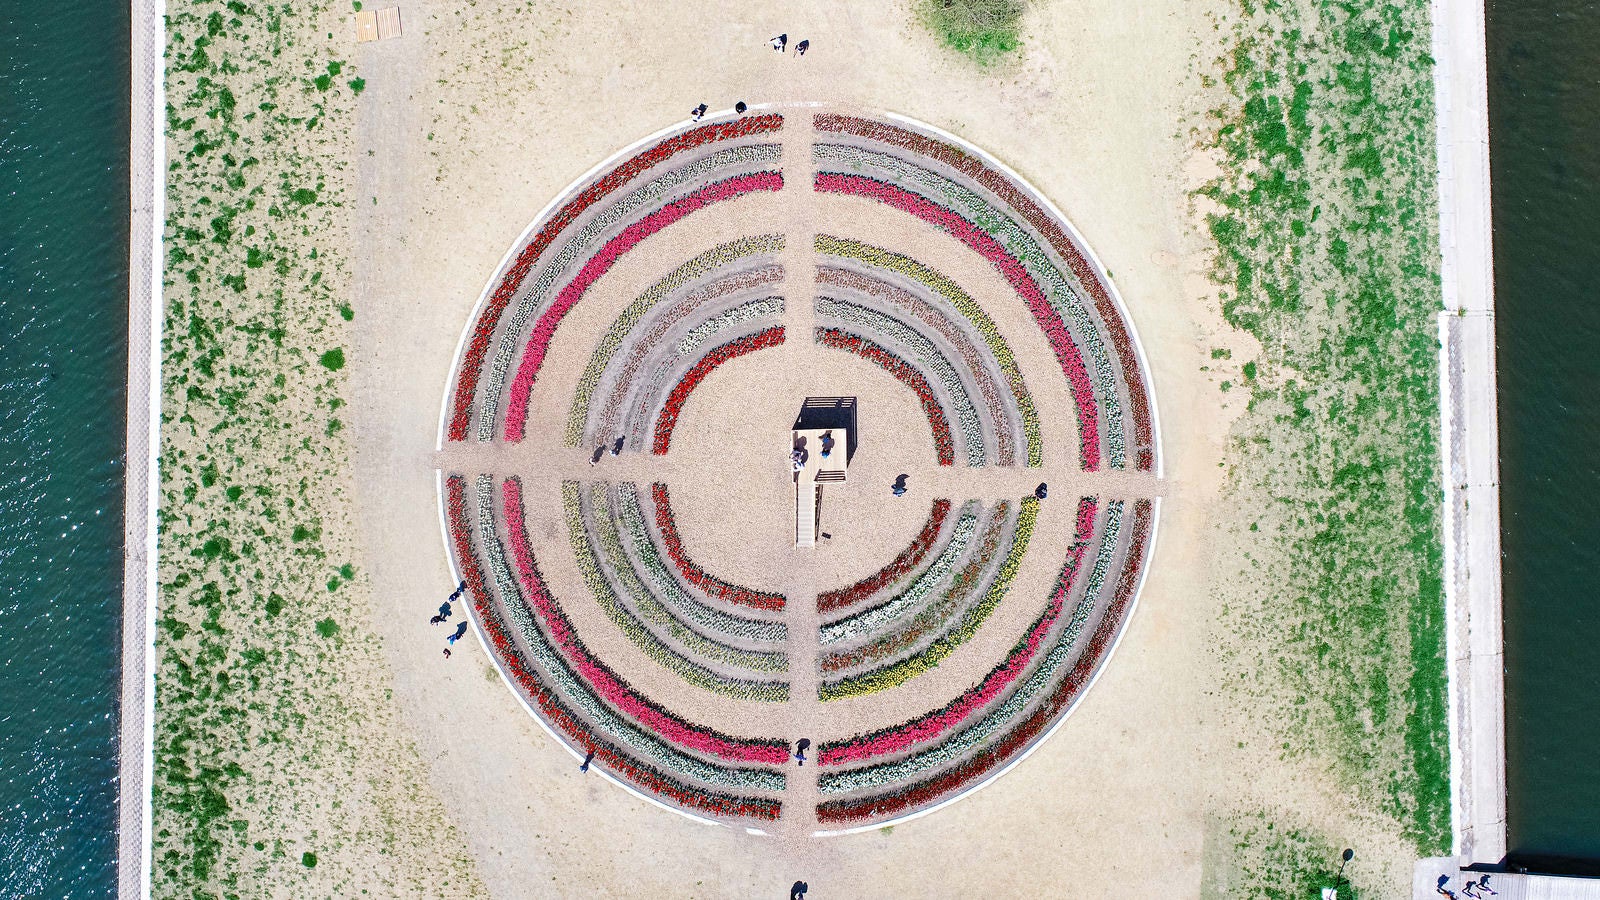 「直方市チューリップフェアの円形花壇の様子」の写真